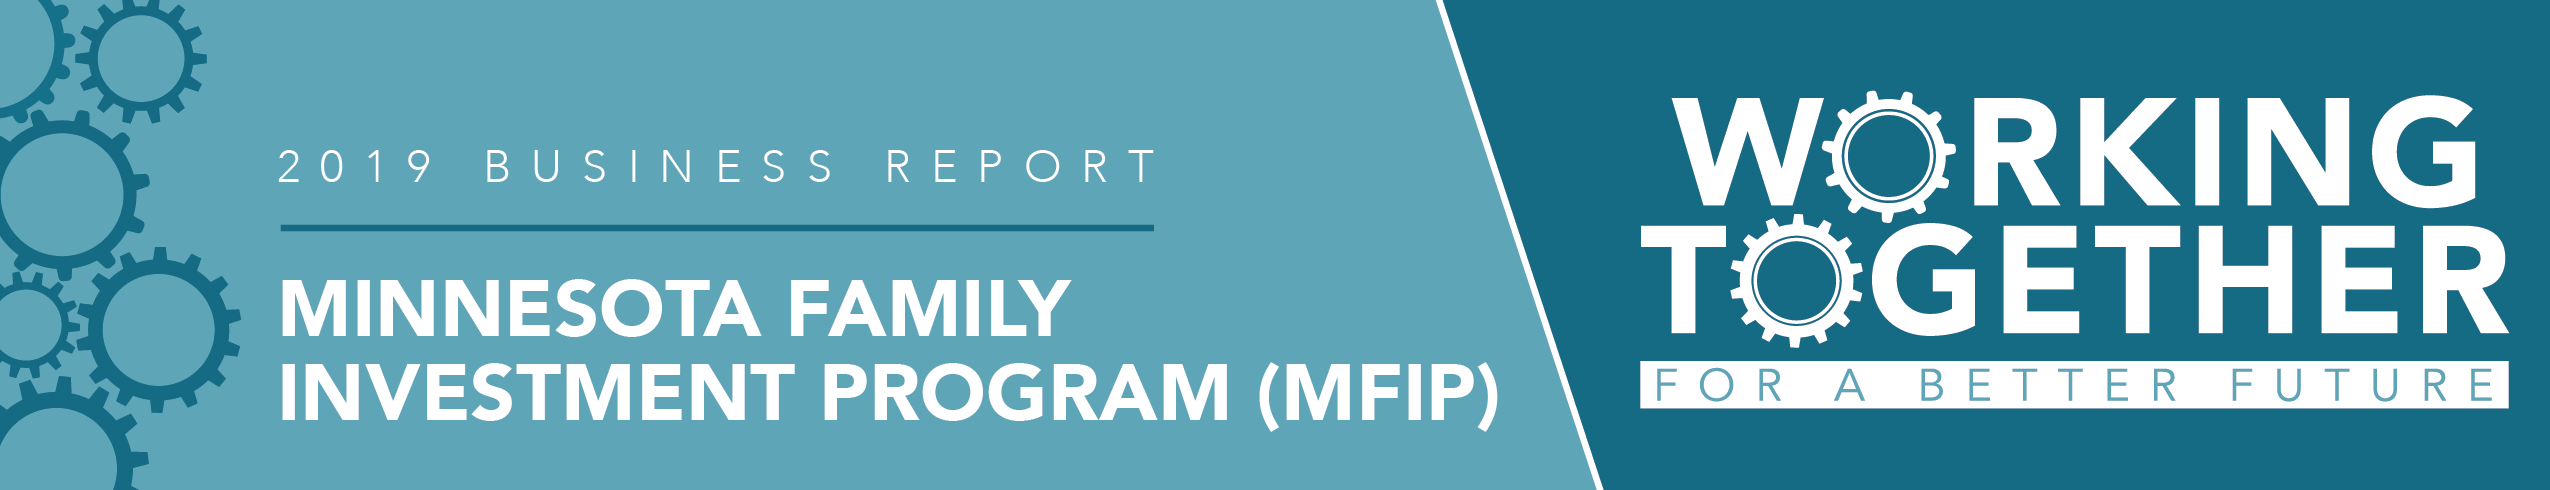 2019 Program Report: Minnesota Family Investment Program (MFIP)